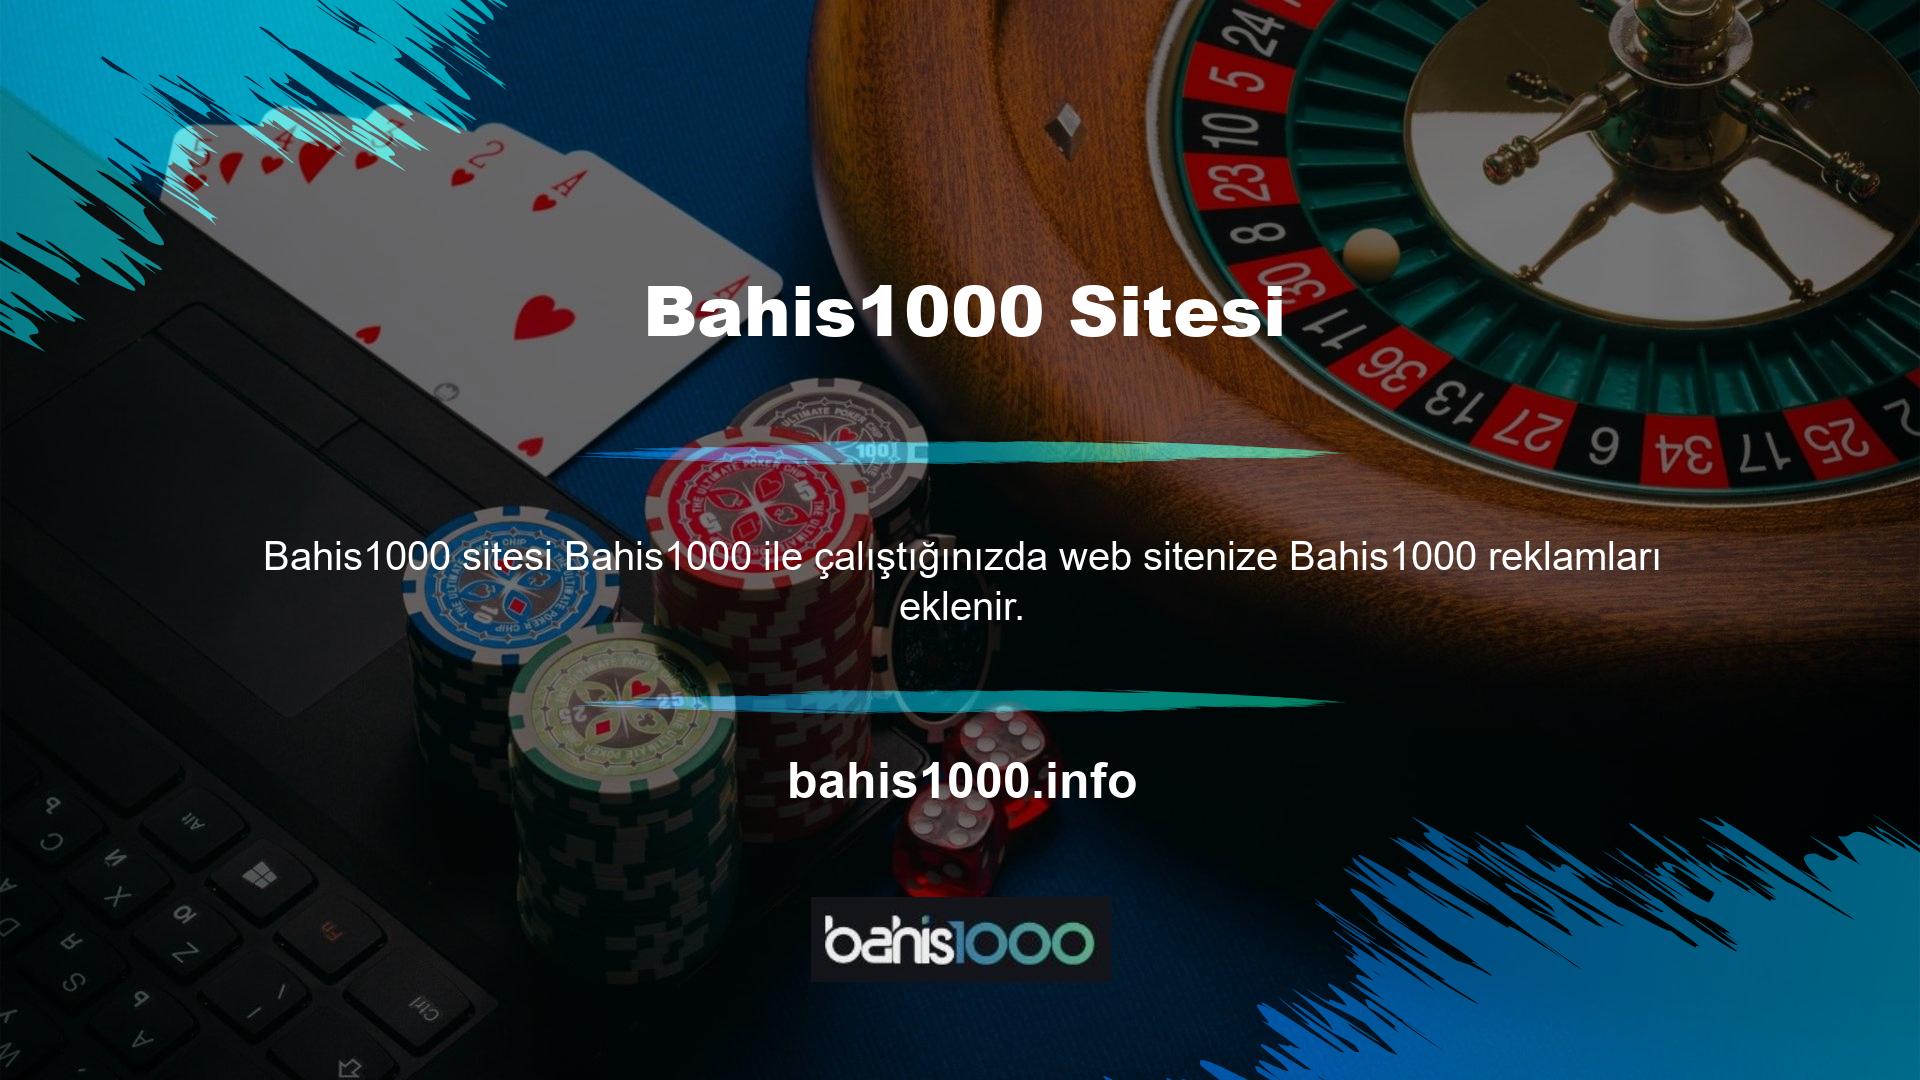 Web sitenizin ziyaretçileri, siteniz üzerinden Bahis1000 üye olarak para kazanıyor